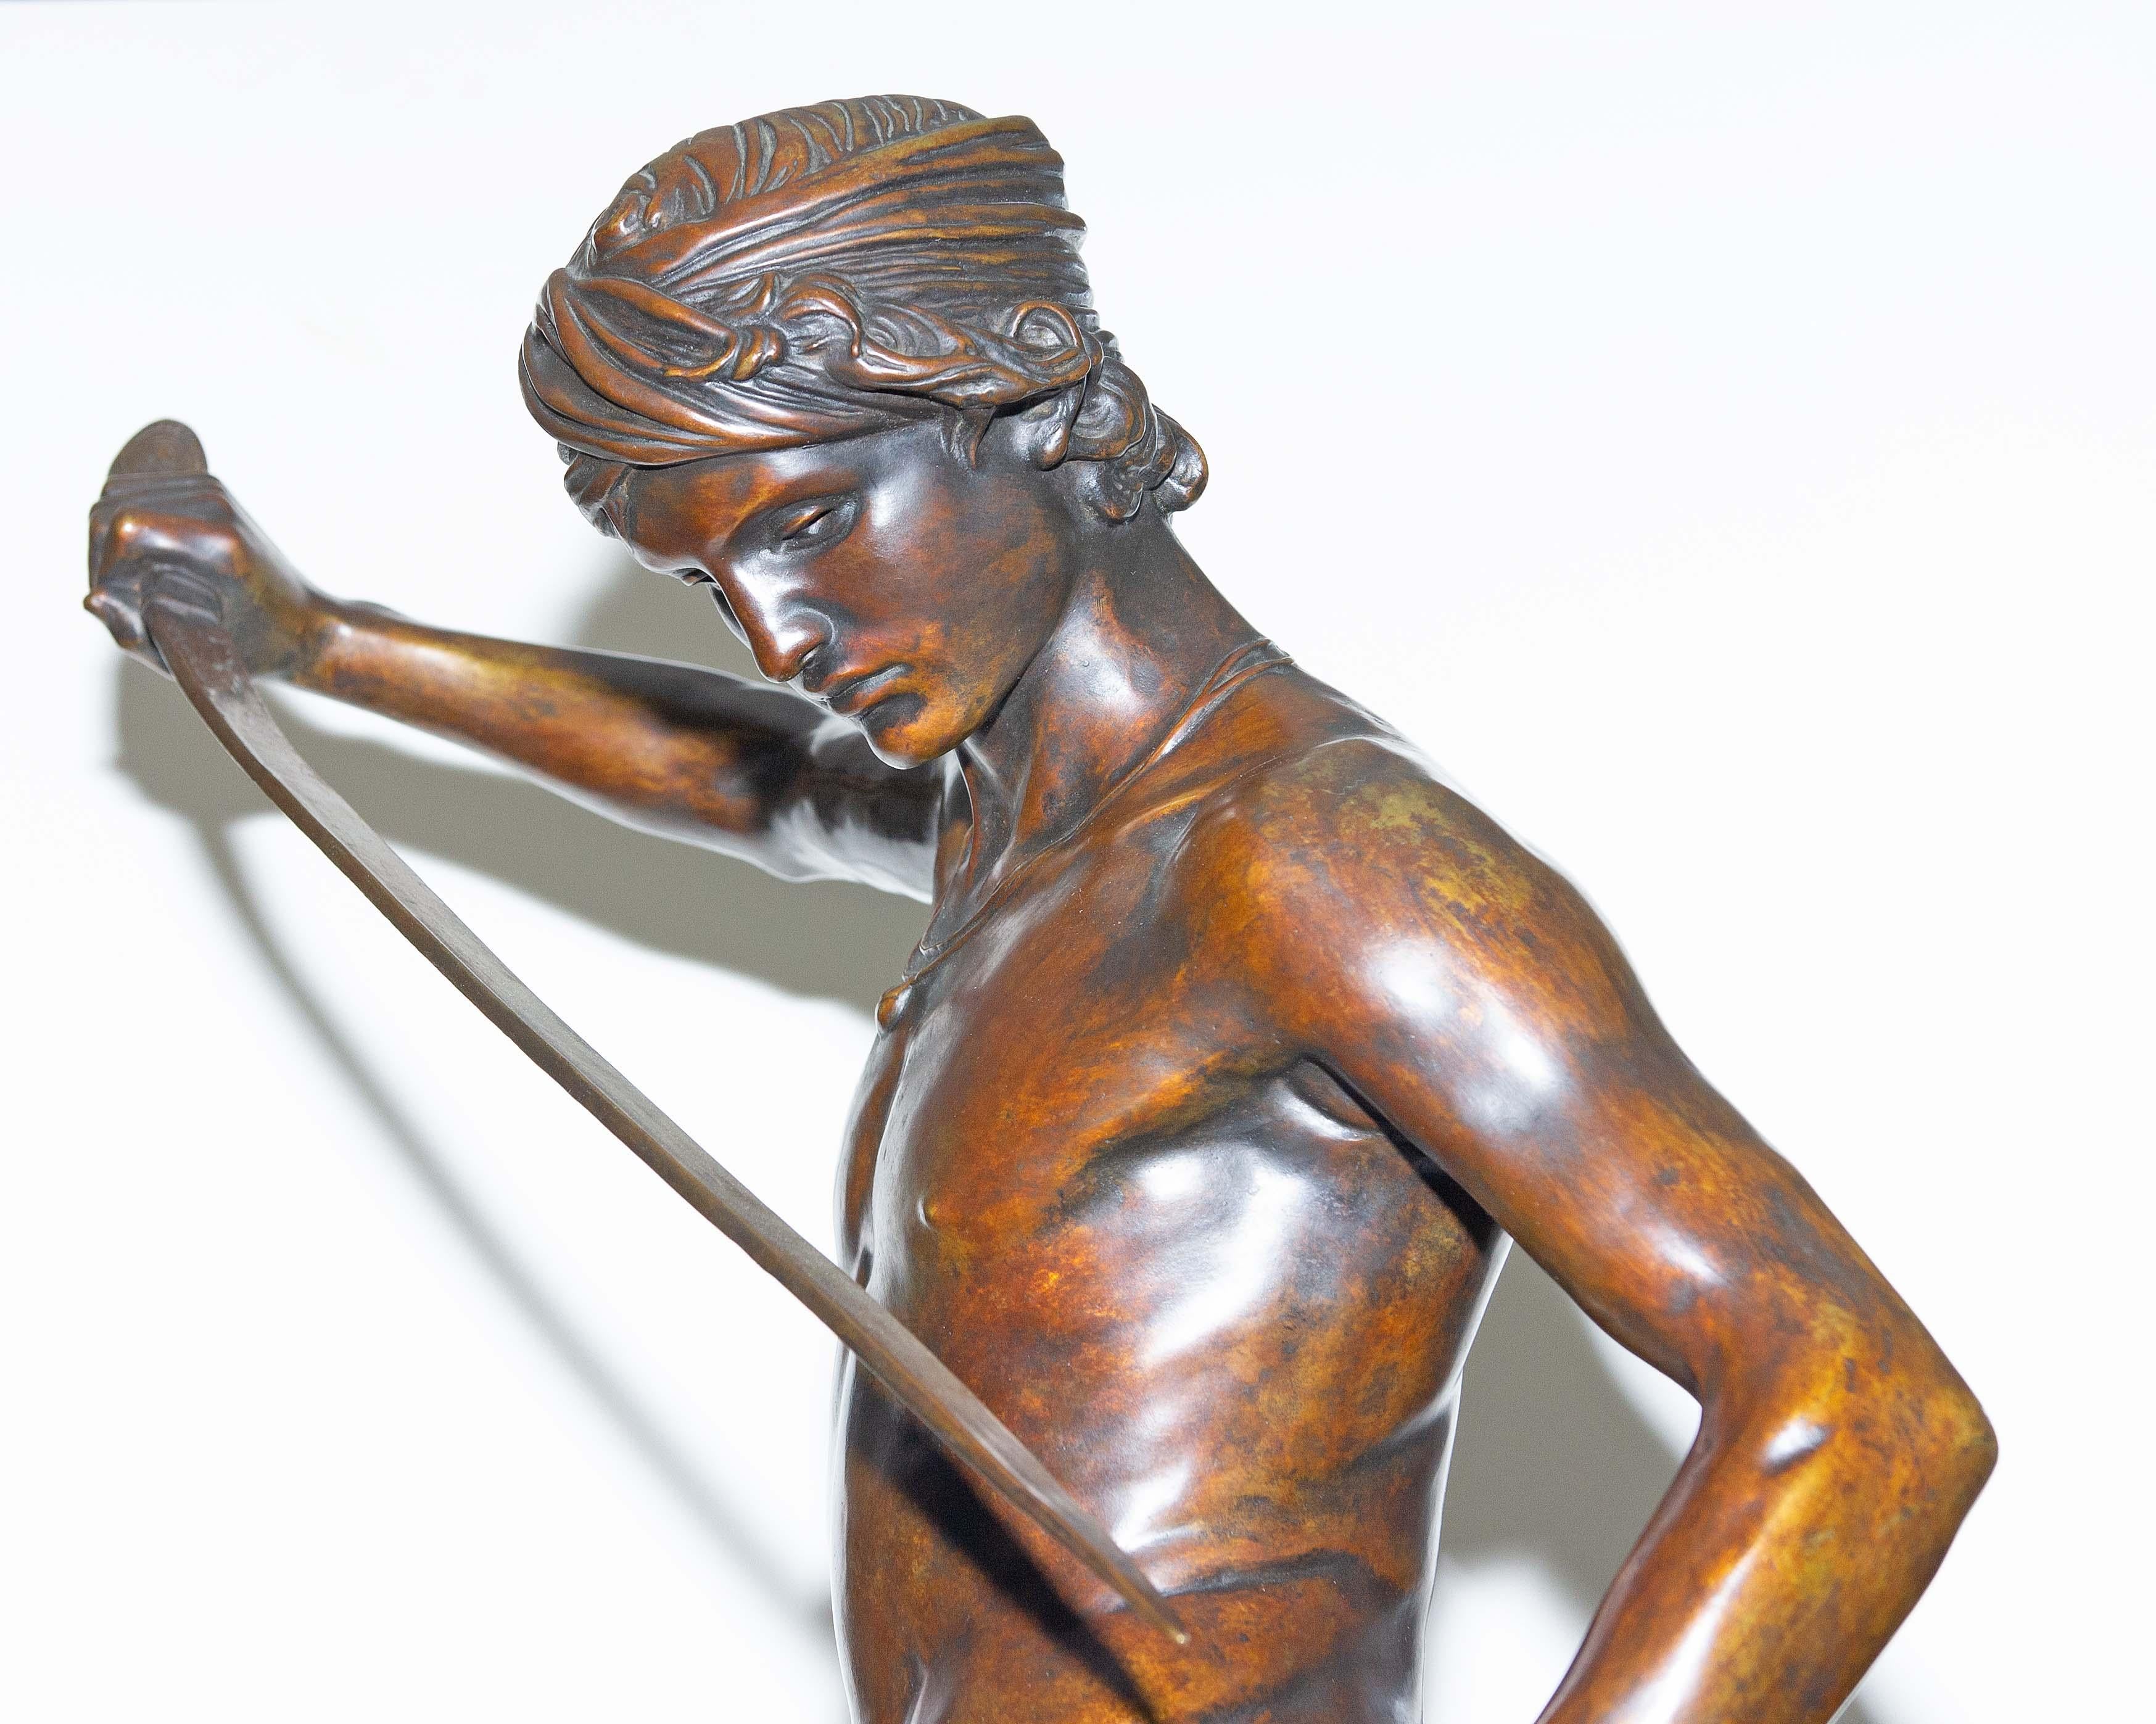 Schöne französische orientalistische Bronzestatue des David nach dem Kampf mit Goliath von Antonin Mercie. Dieses Sujet erhielt die Ehrenmedaille, als es im Pariser Salon des Beaux Arts ausgestellt wurde. Spätes 19. Jahrhundert. 42